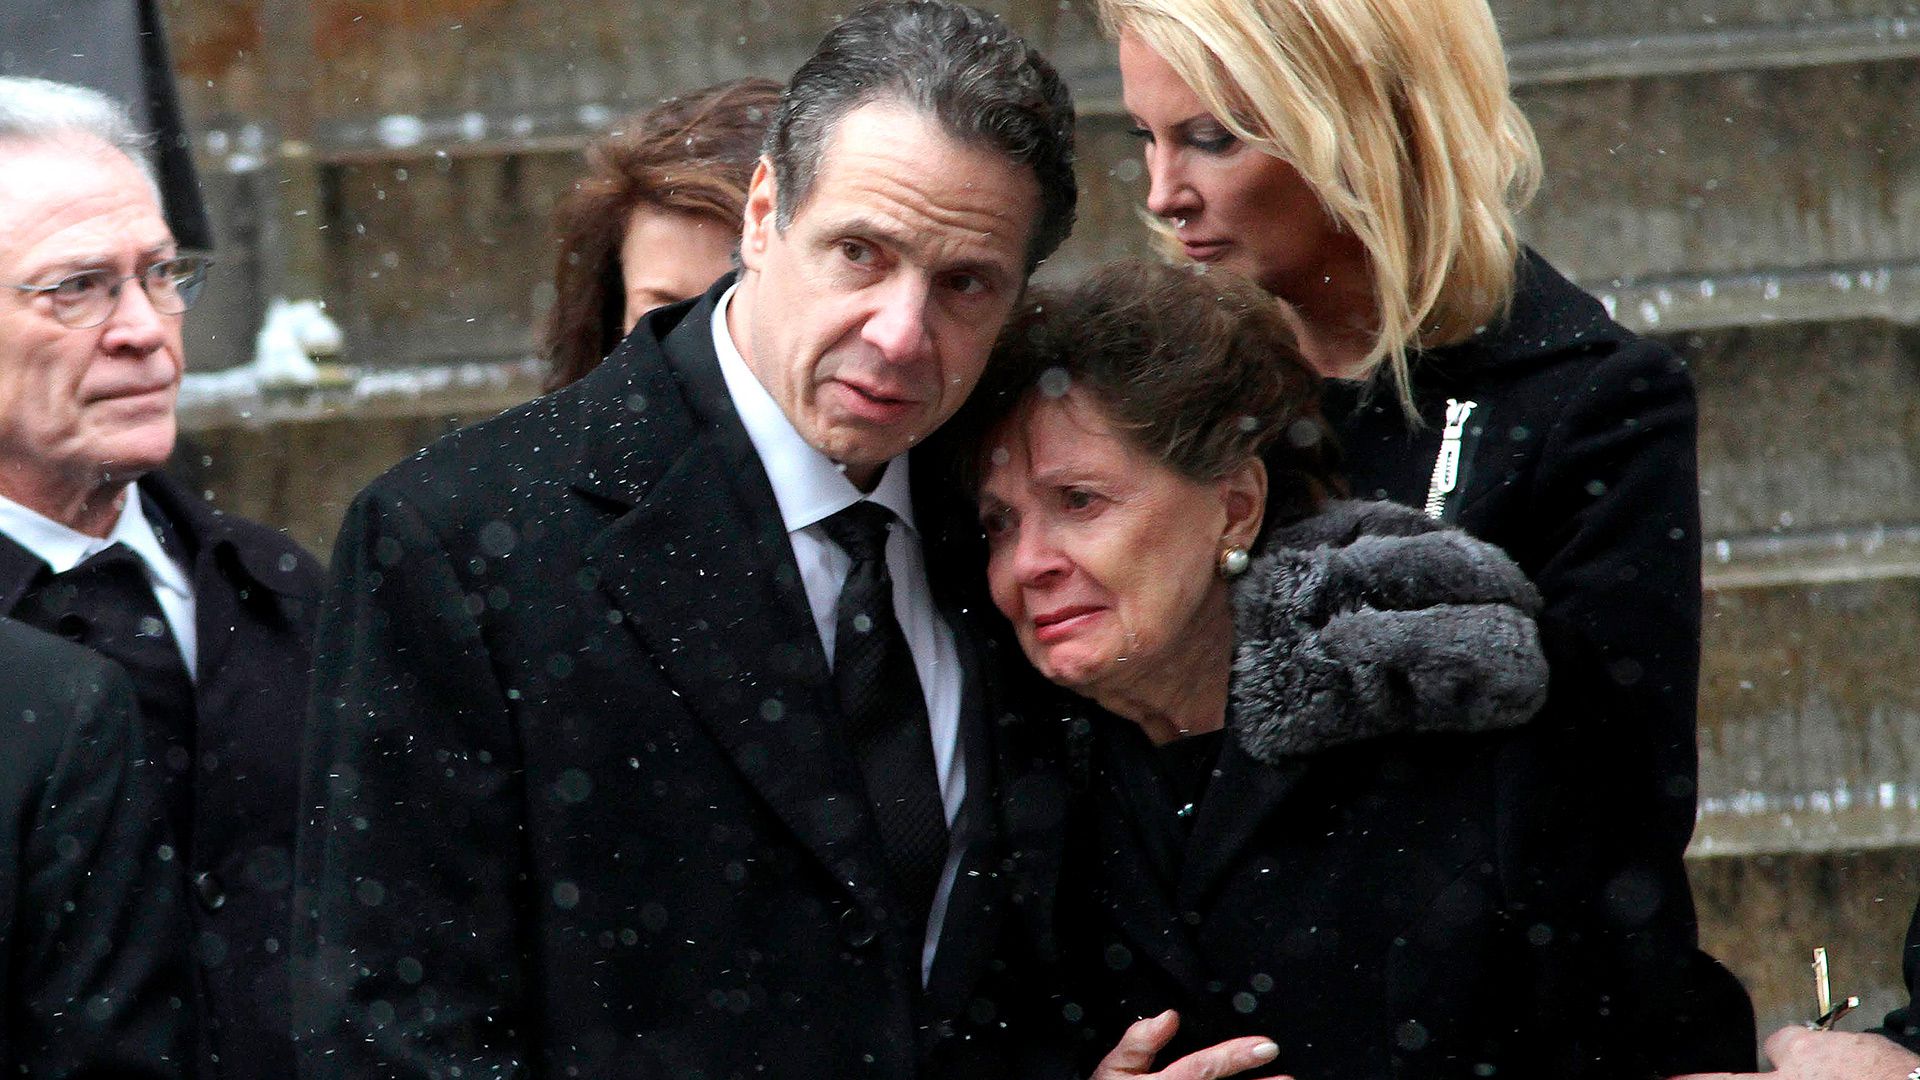 Andrew Cuomo sostiene a su madre, Matilda, en el funeral de su padre, Mario Cuomo, estrella demócrata y tres veces goberanador de Nueva York, quien murió en 2015 a los 82 años. (Zuma/Shutterstock)